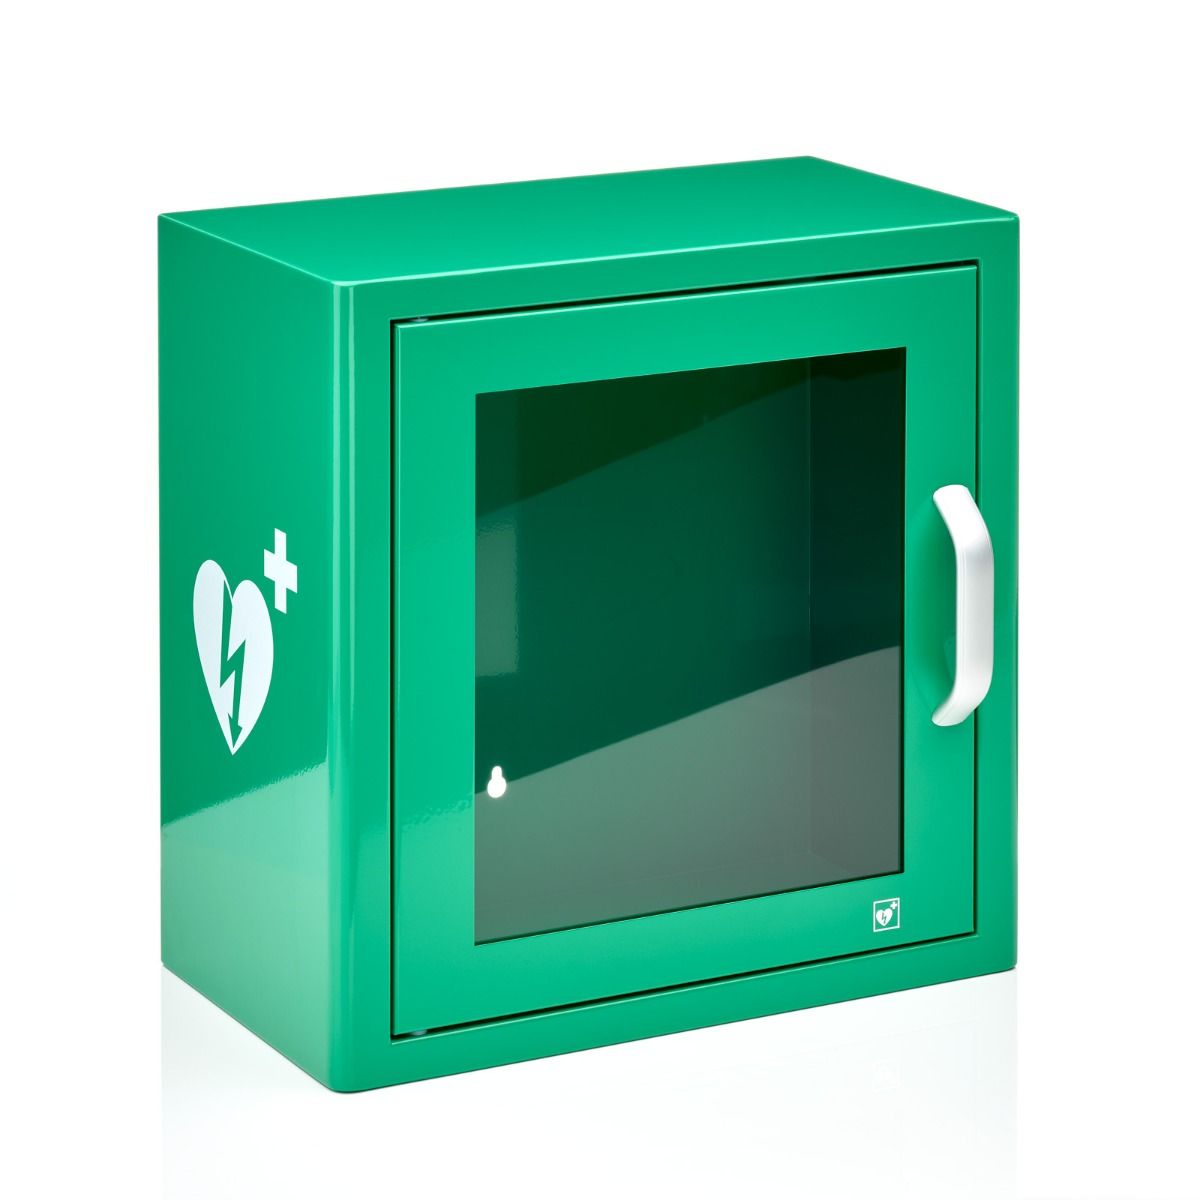 AED binnenkast Groen met alarm en logo